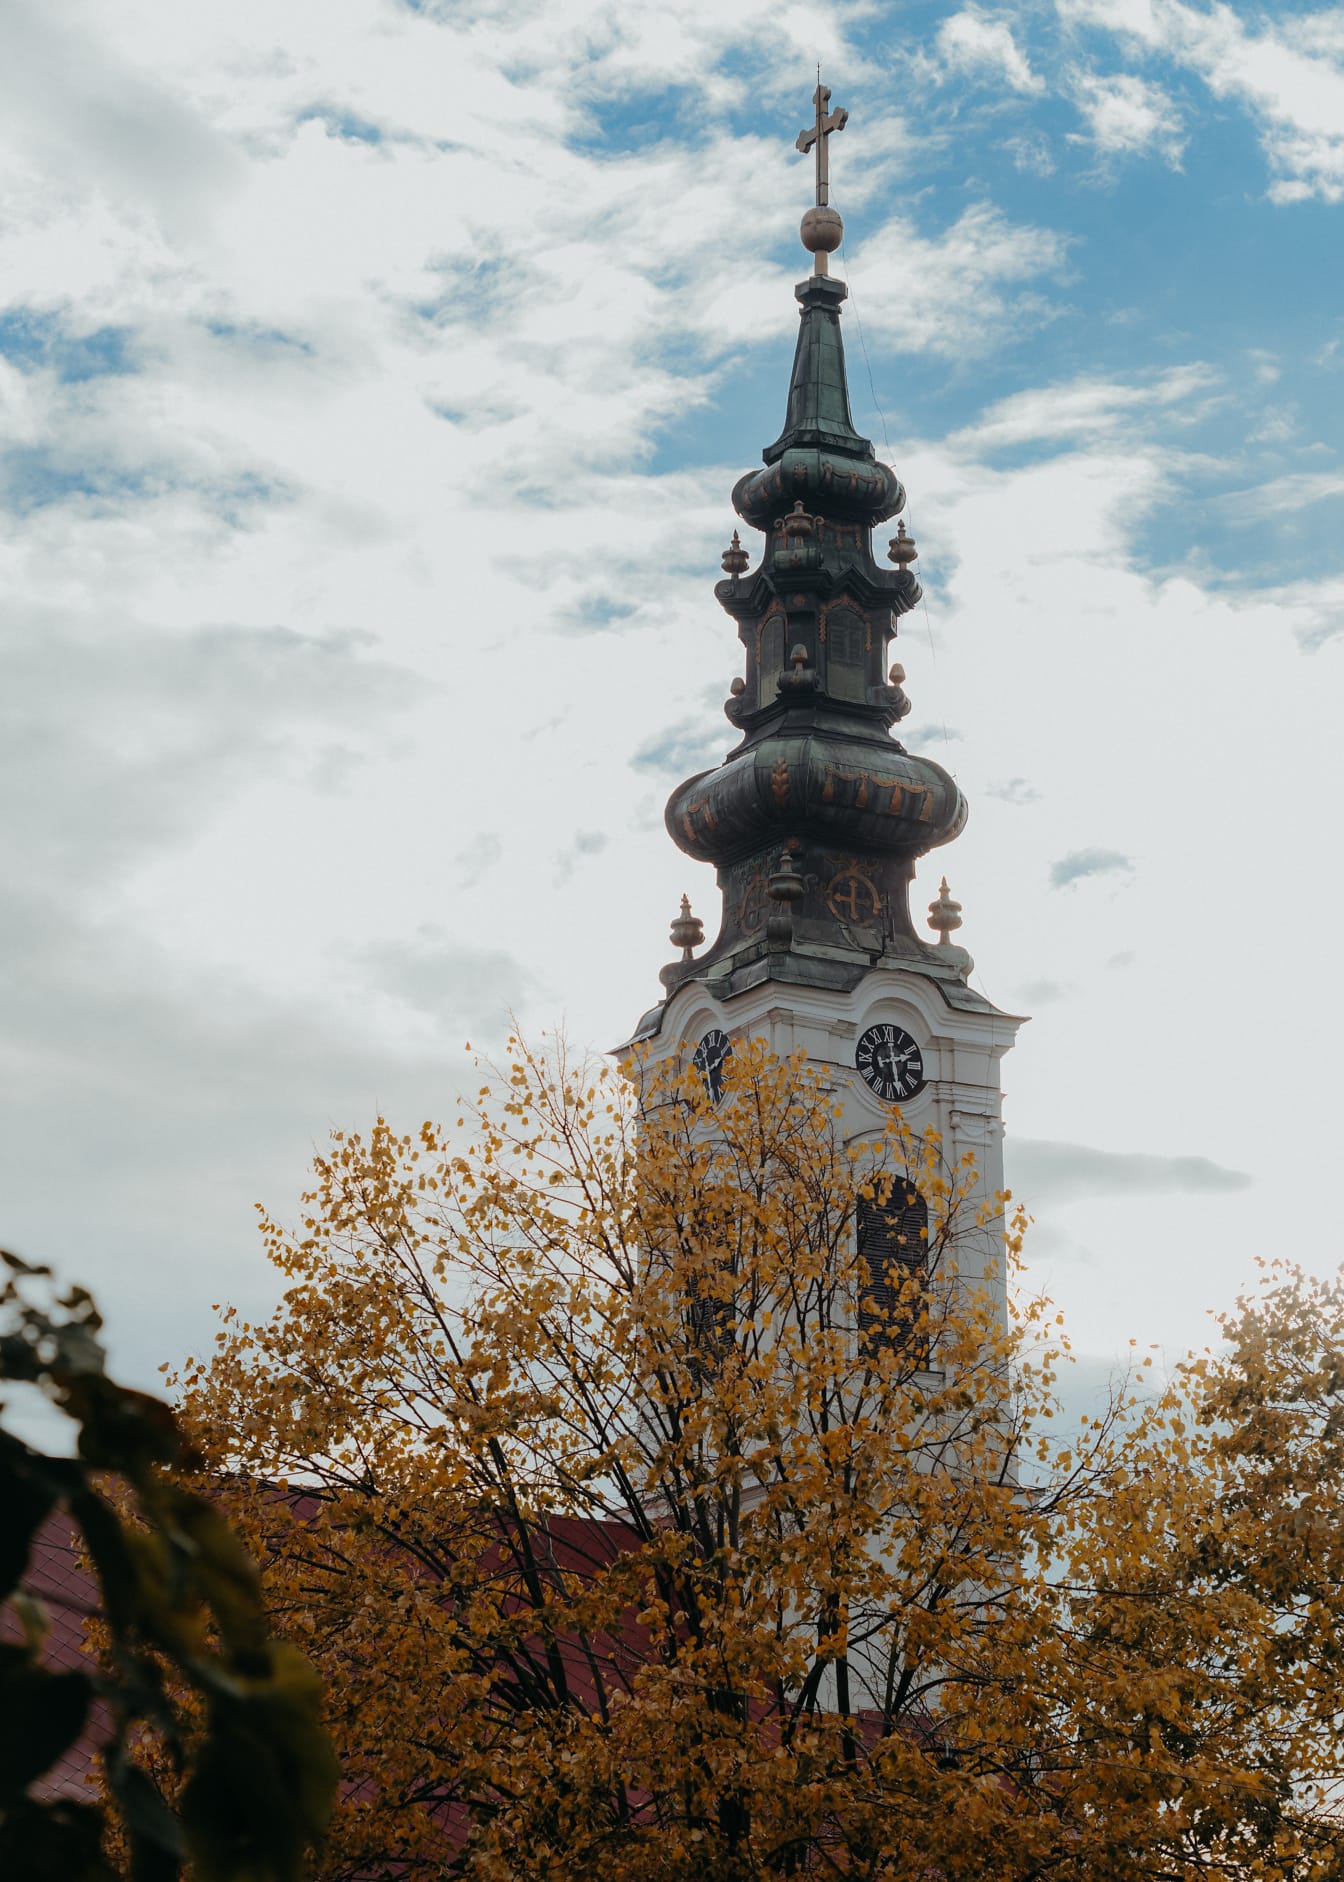 Menara gereja ortodoks Serbia dengan langit biru dengan awan sebagai latar belakang